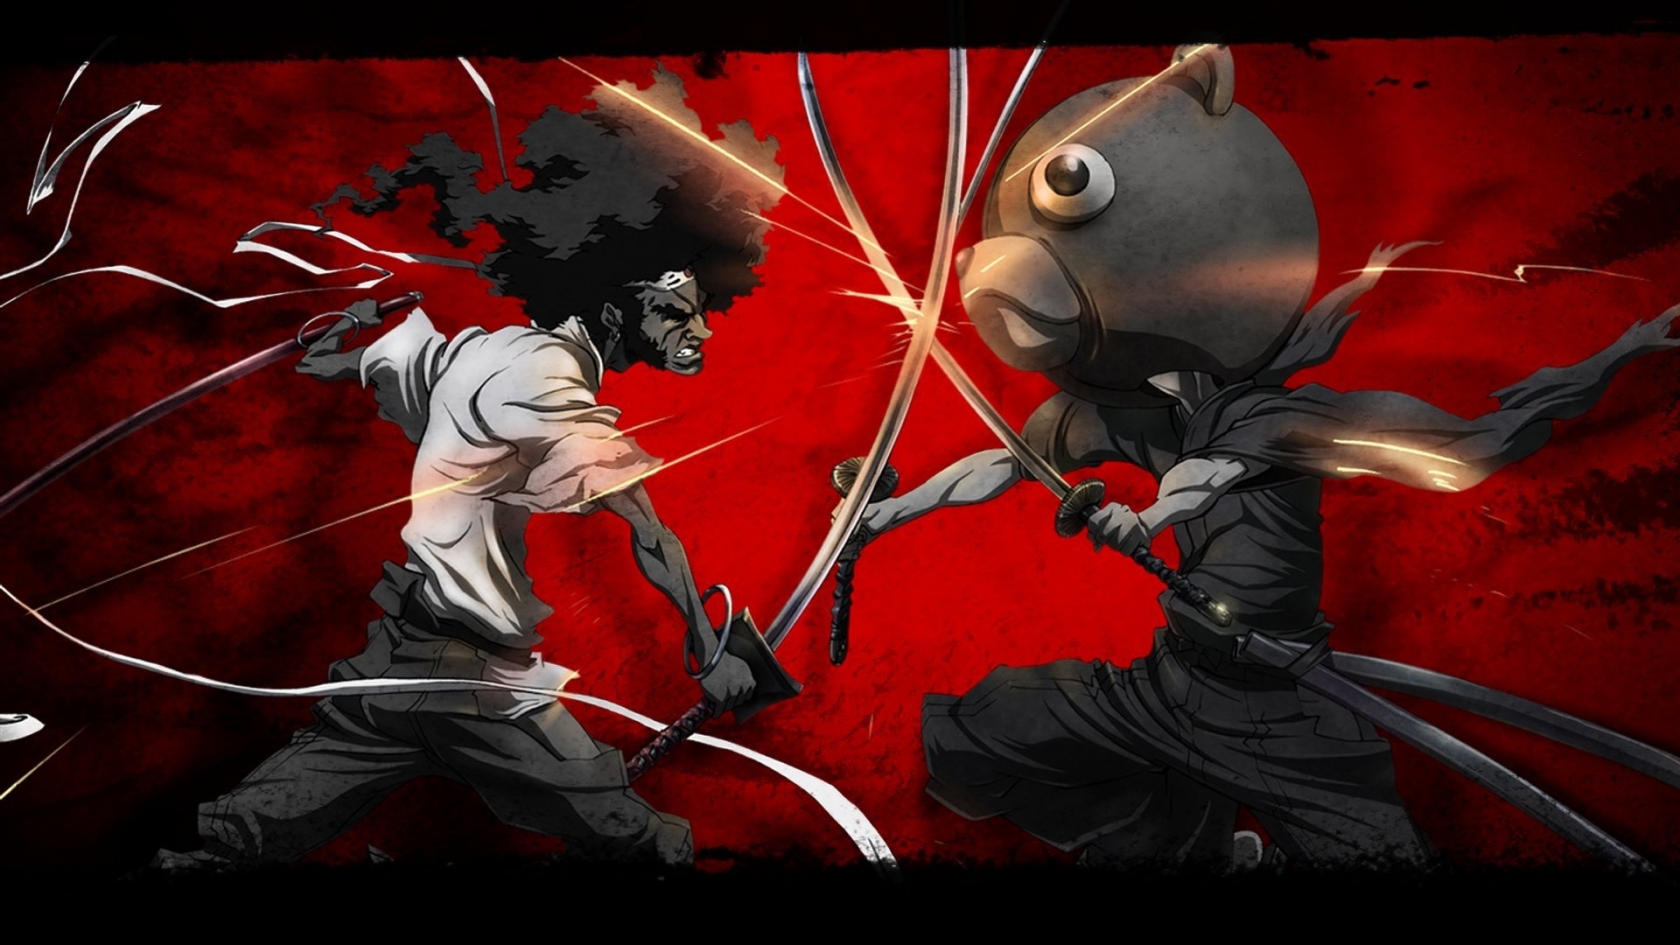 Afro Samurai vs Kuma for 1680 x 945 HDTV resolution